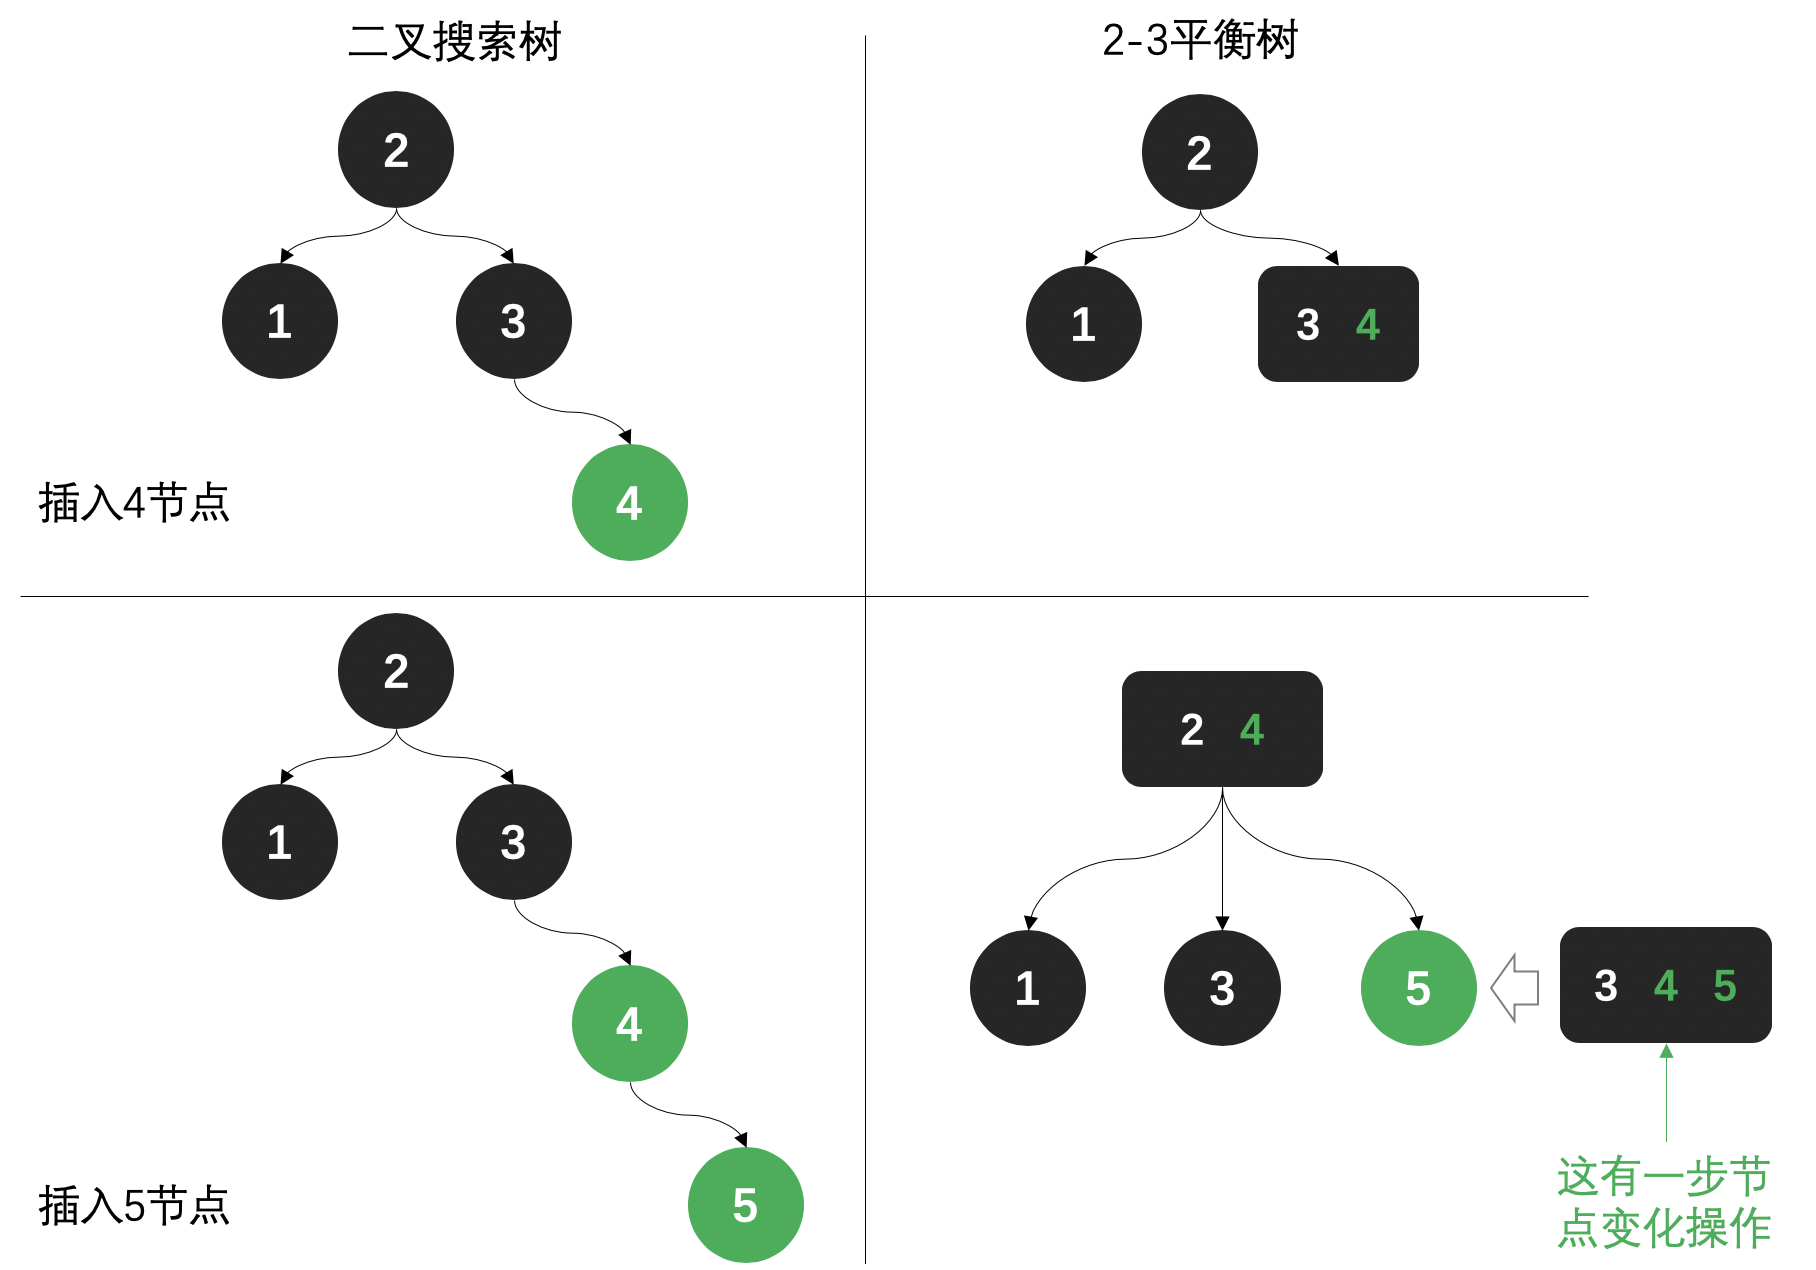 2-3平衡树 (红黑树的前身) - 图3